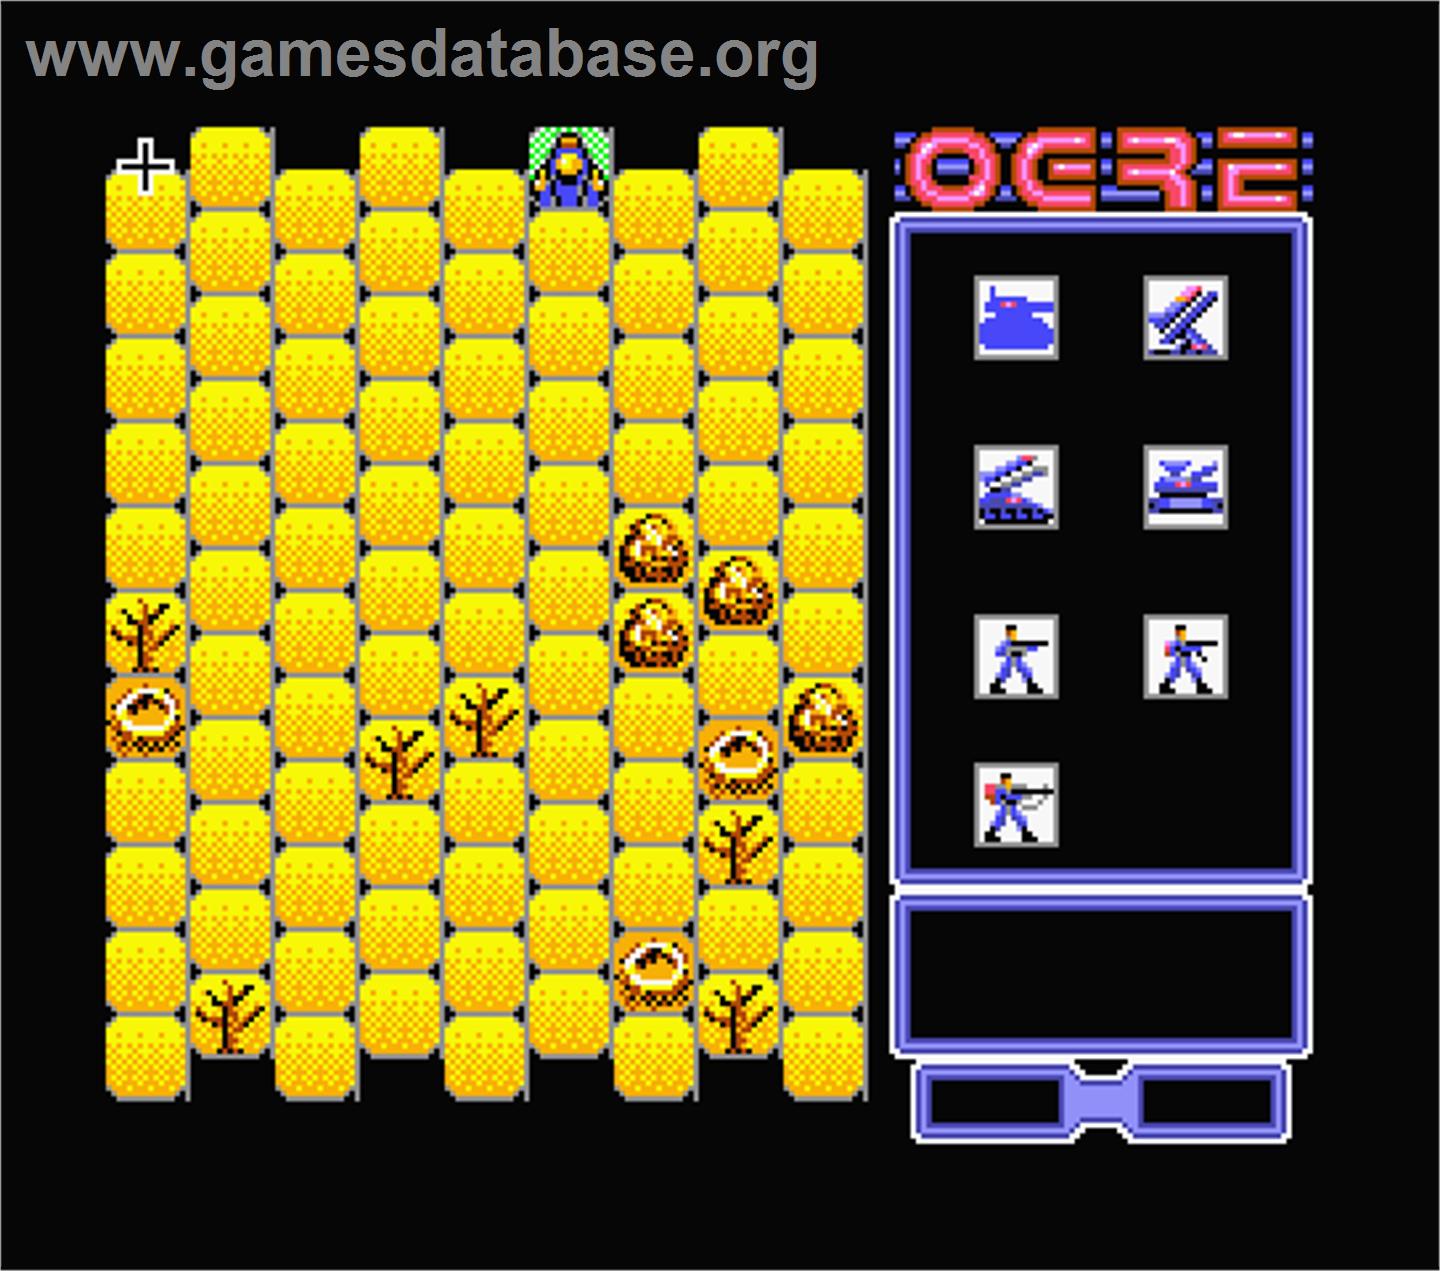 Ogre - MSX 2 - Artwork - In Game